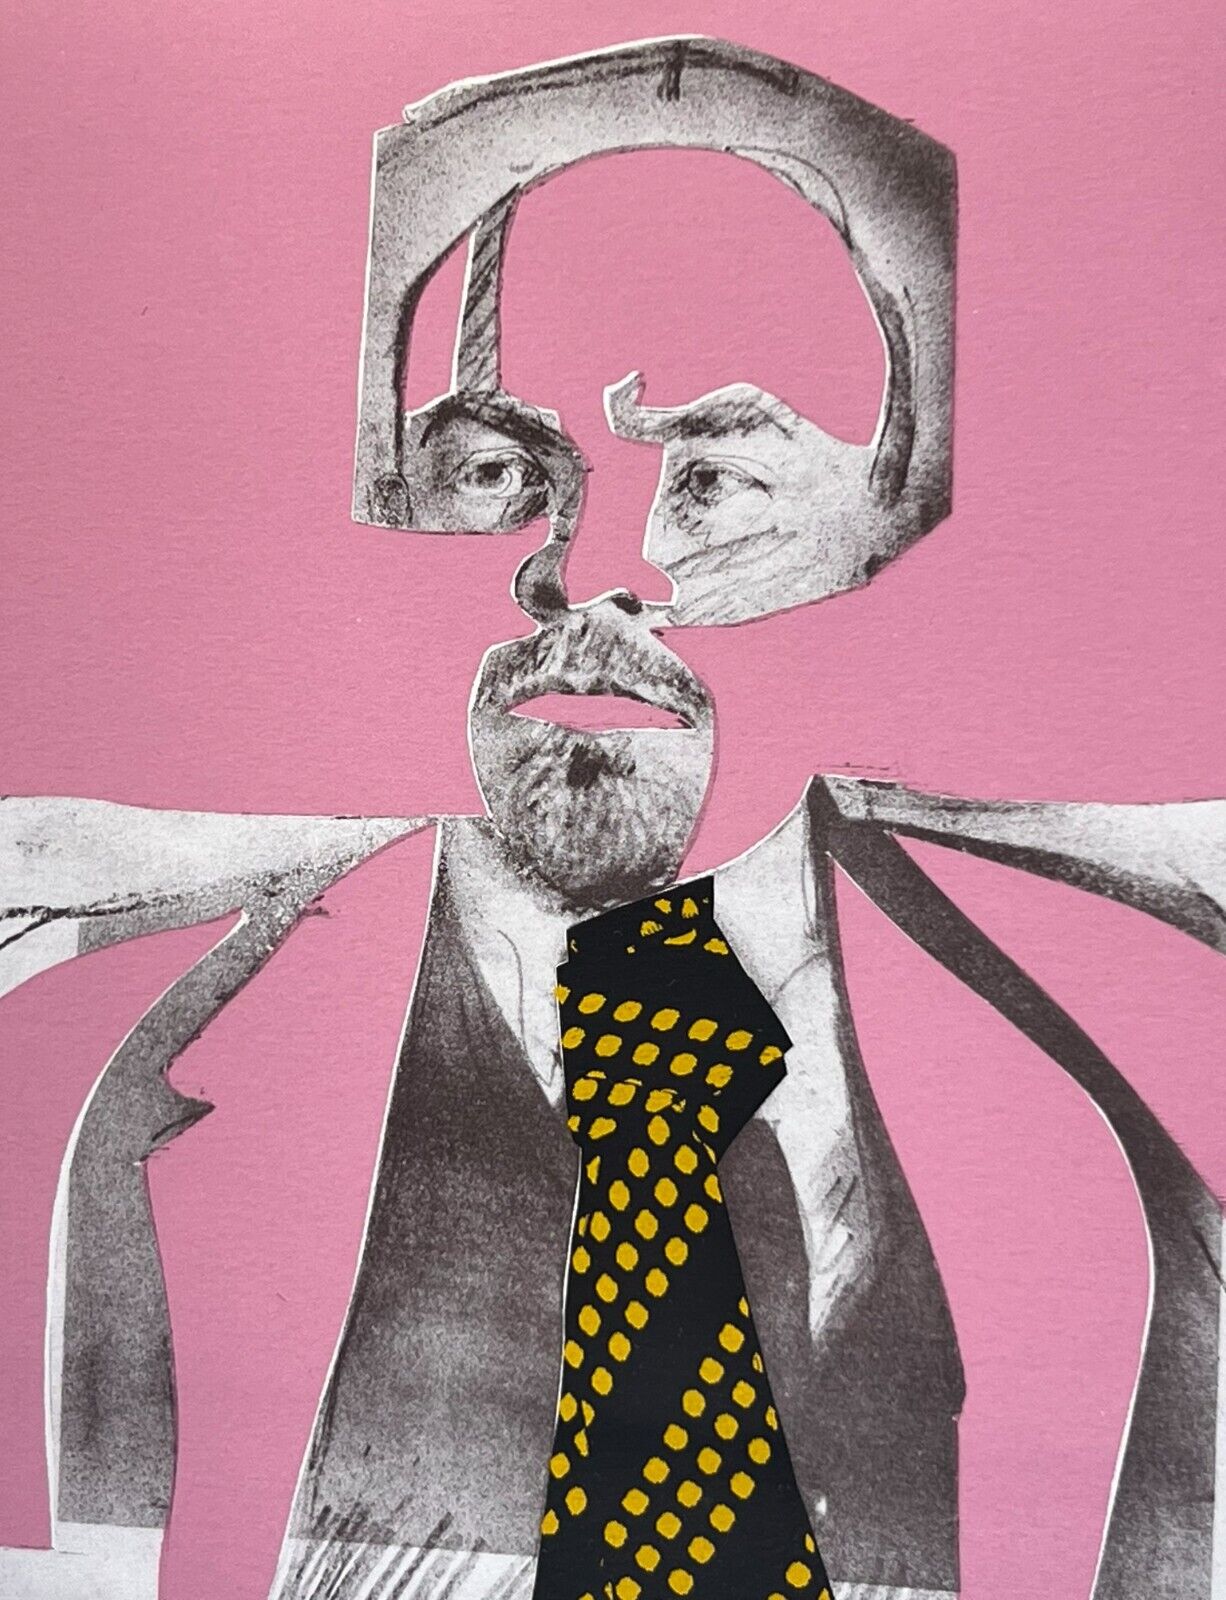 Larry Rivers Lenin, 1973 Color Lithograph image detail of Lenin